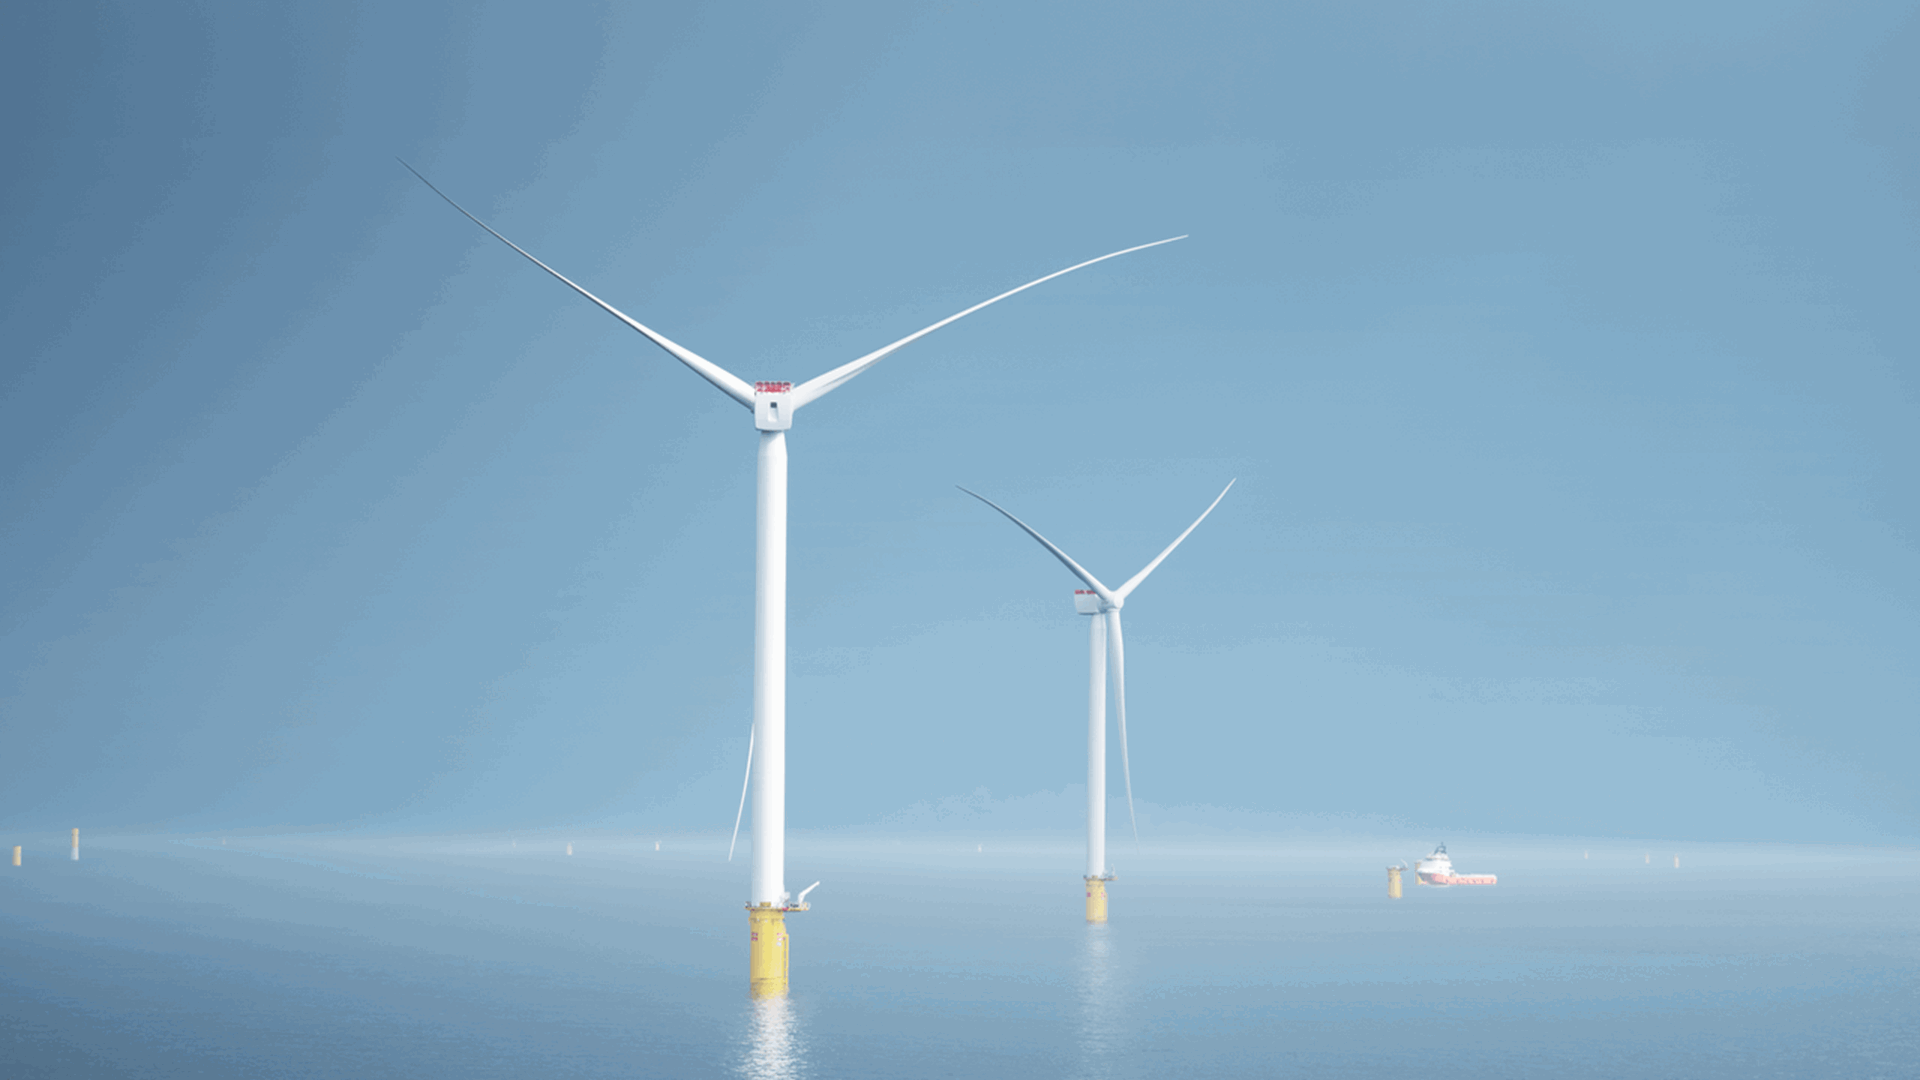 Welkom bij Zeevonk, ons nieuwe windpark 